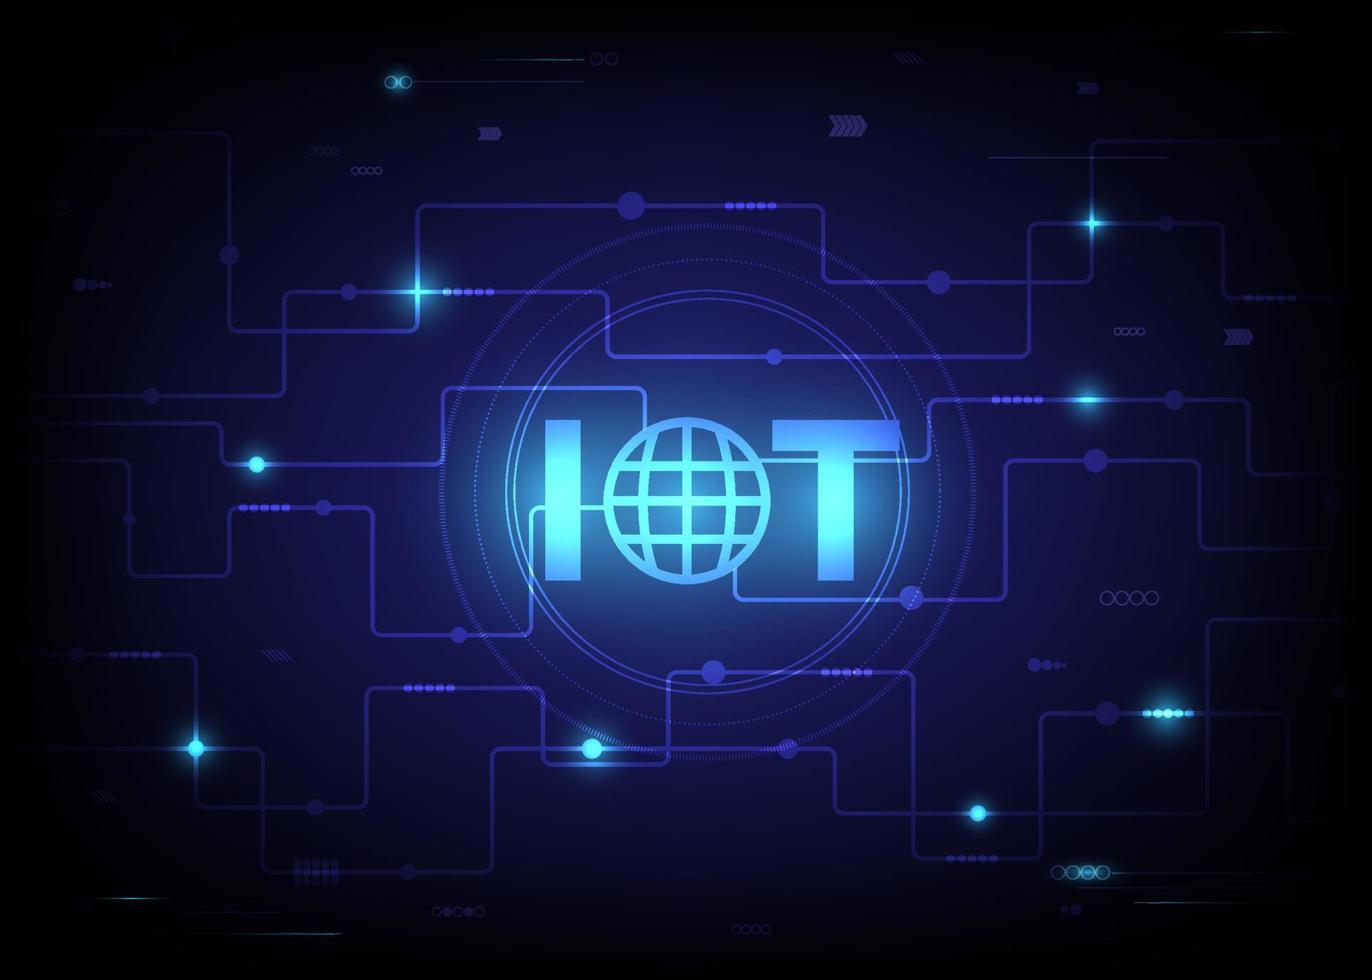 concepto de Internet de las cosas y conceptos de conectividad en una red. tela de araña de conexiones de red con un fondo azul futurista placa de circuito digital. vector